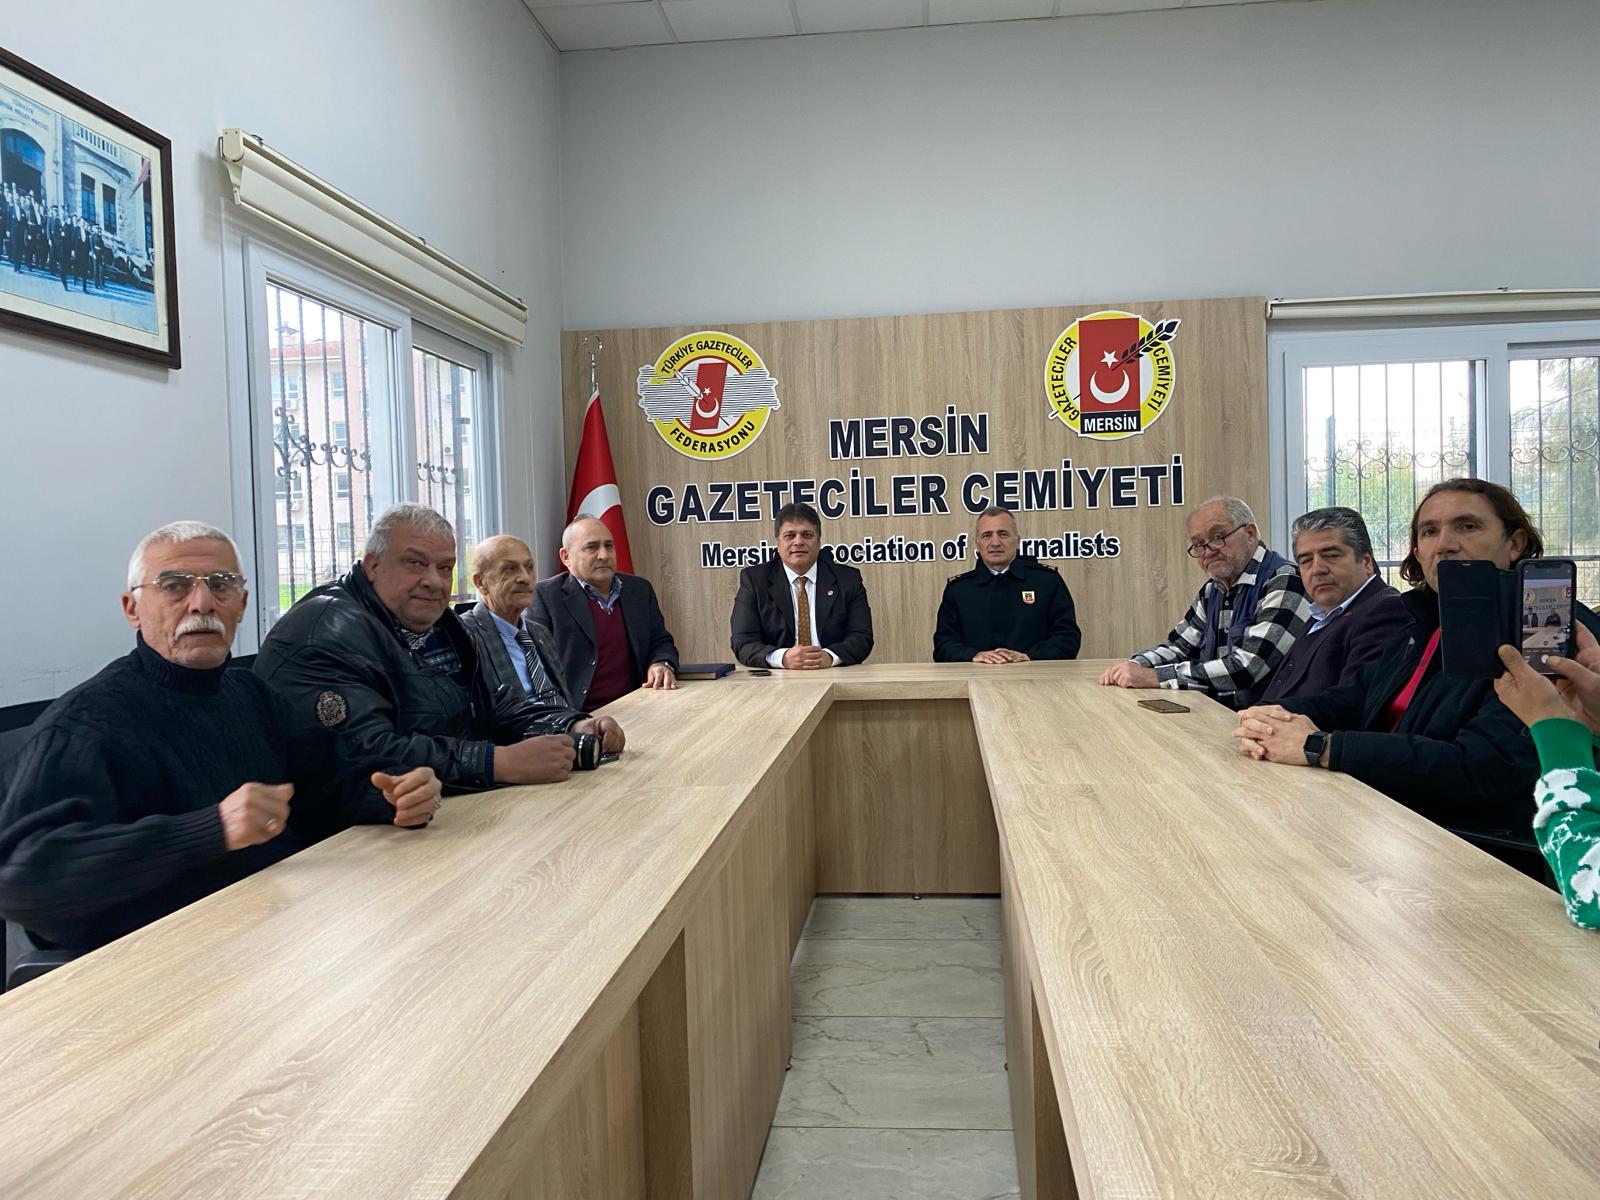 Mersin İl Jandarma Komutanı,  Tuğgeneral Ercan ATASOY   Mersin gazeteciler cemiyetini ziyaret etti;